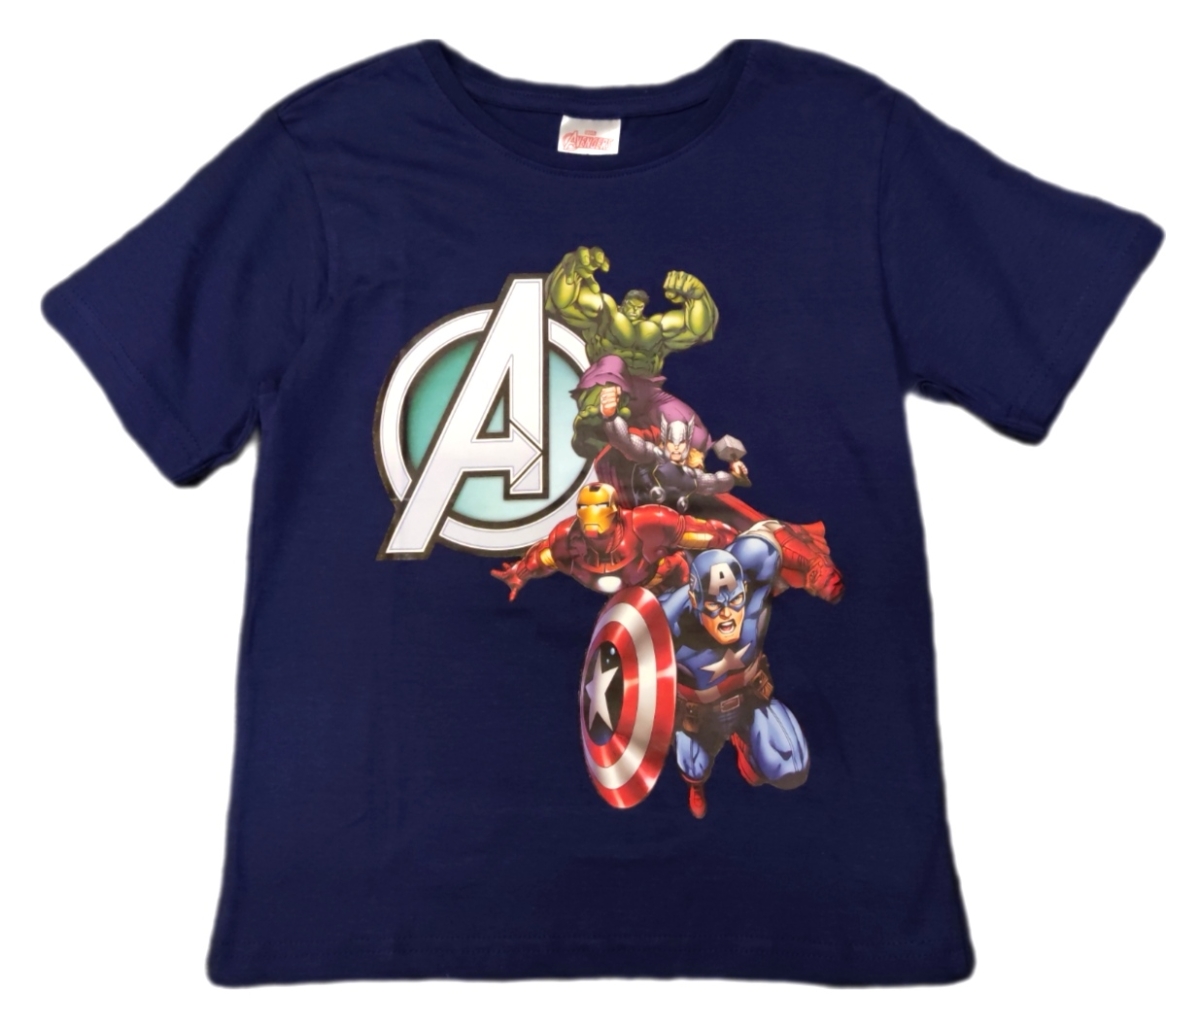 Jungen T-Shirt blau Marvel Avengers mit Thor, Captain America, Hulk und Ironman